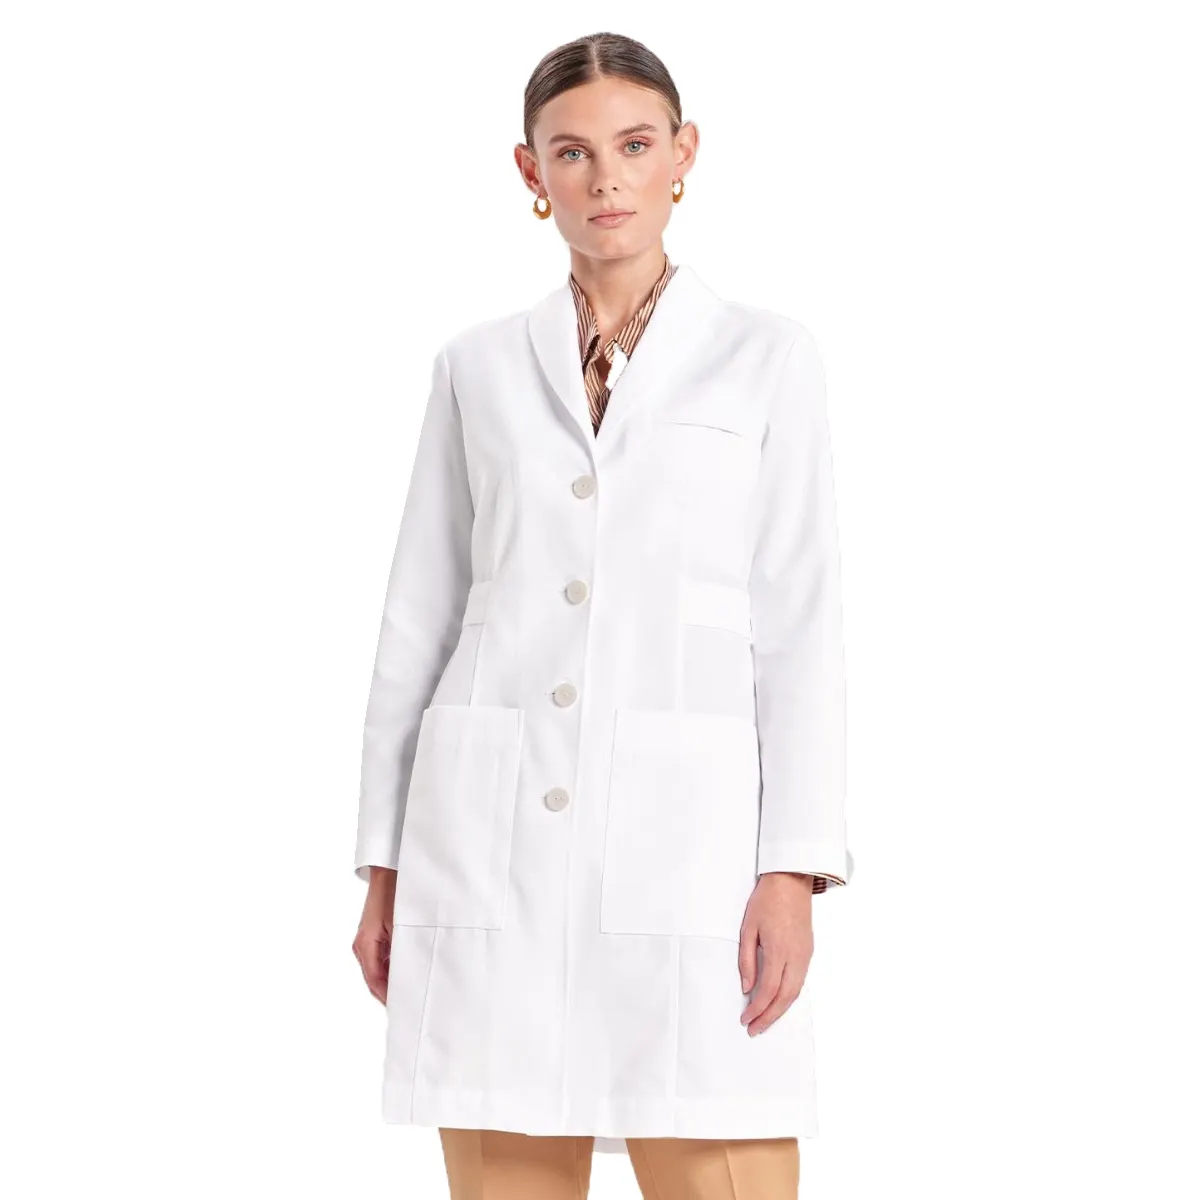 Mantel dokter katun seragam rumah sakit perawat mantel Lab gigi medis grosir modis penjualan laris desain khusus putih pendek